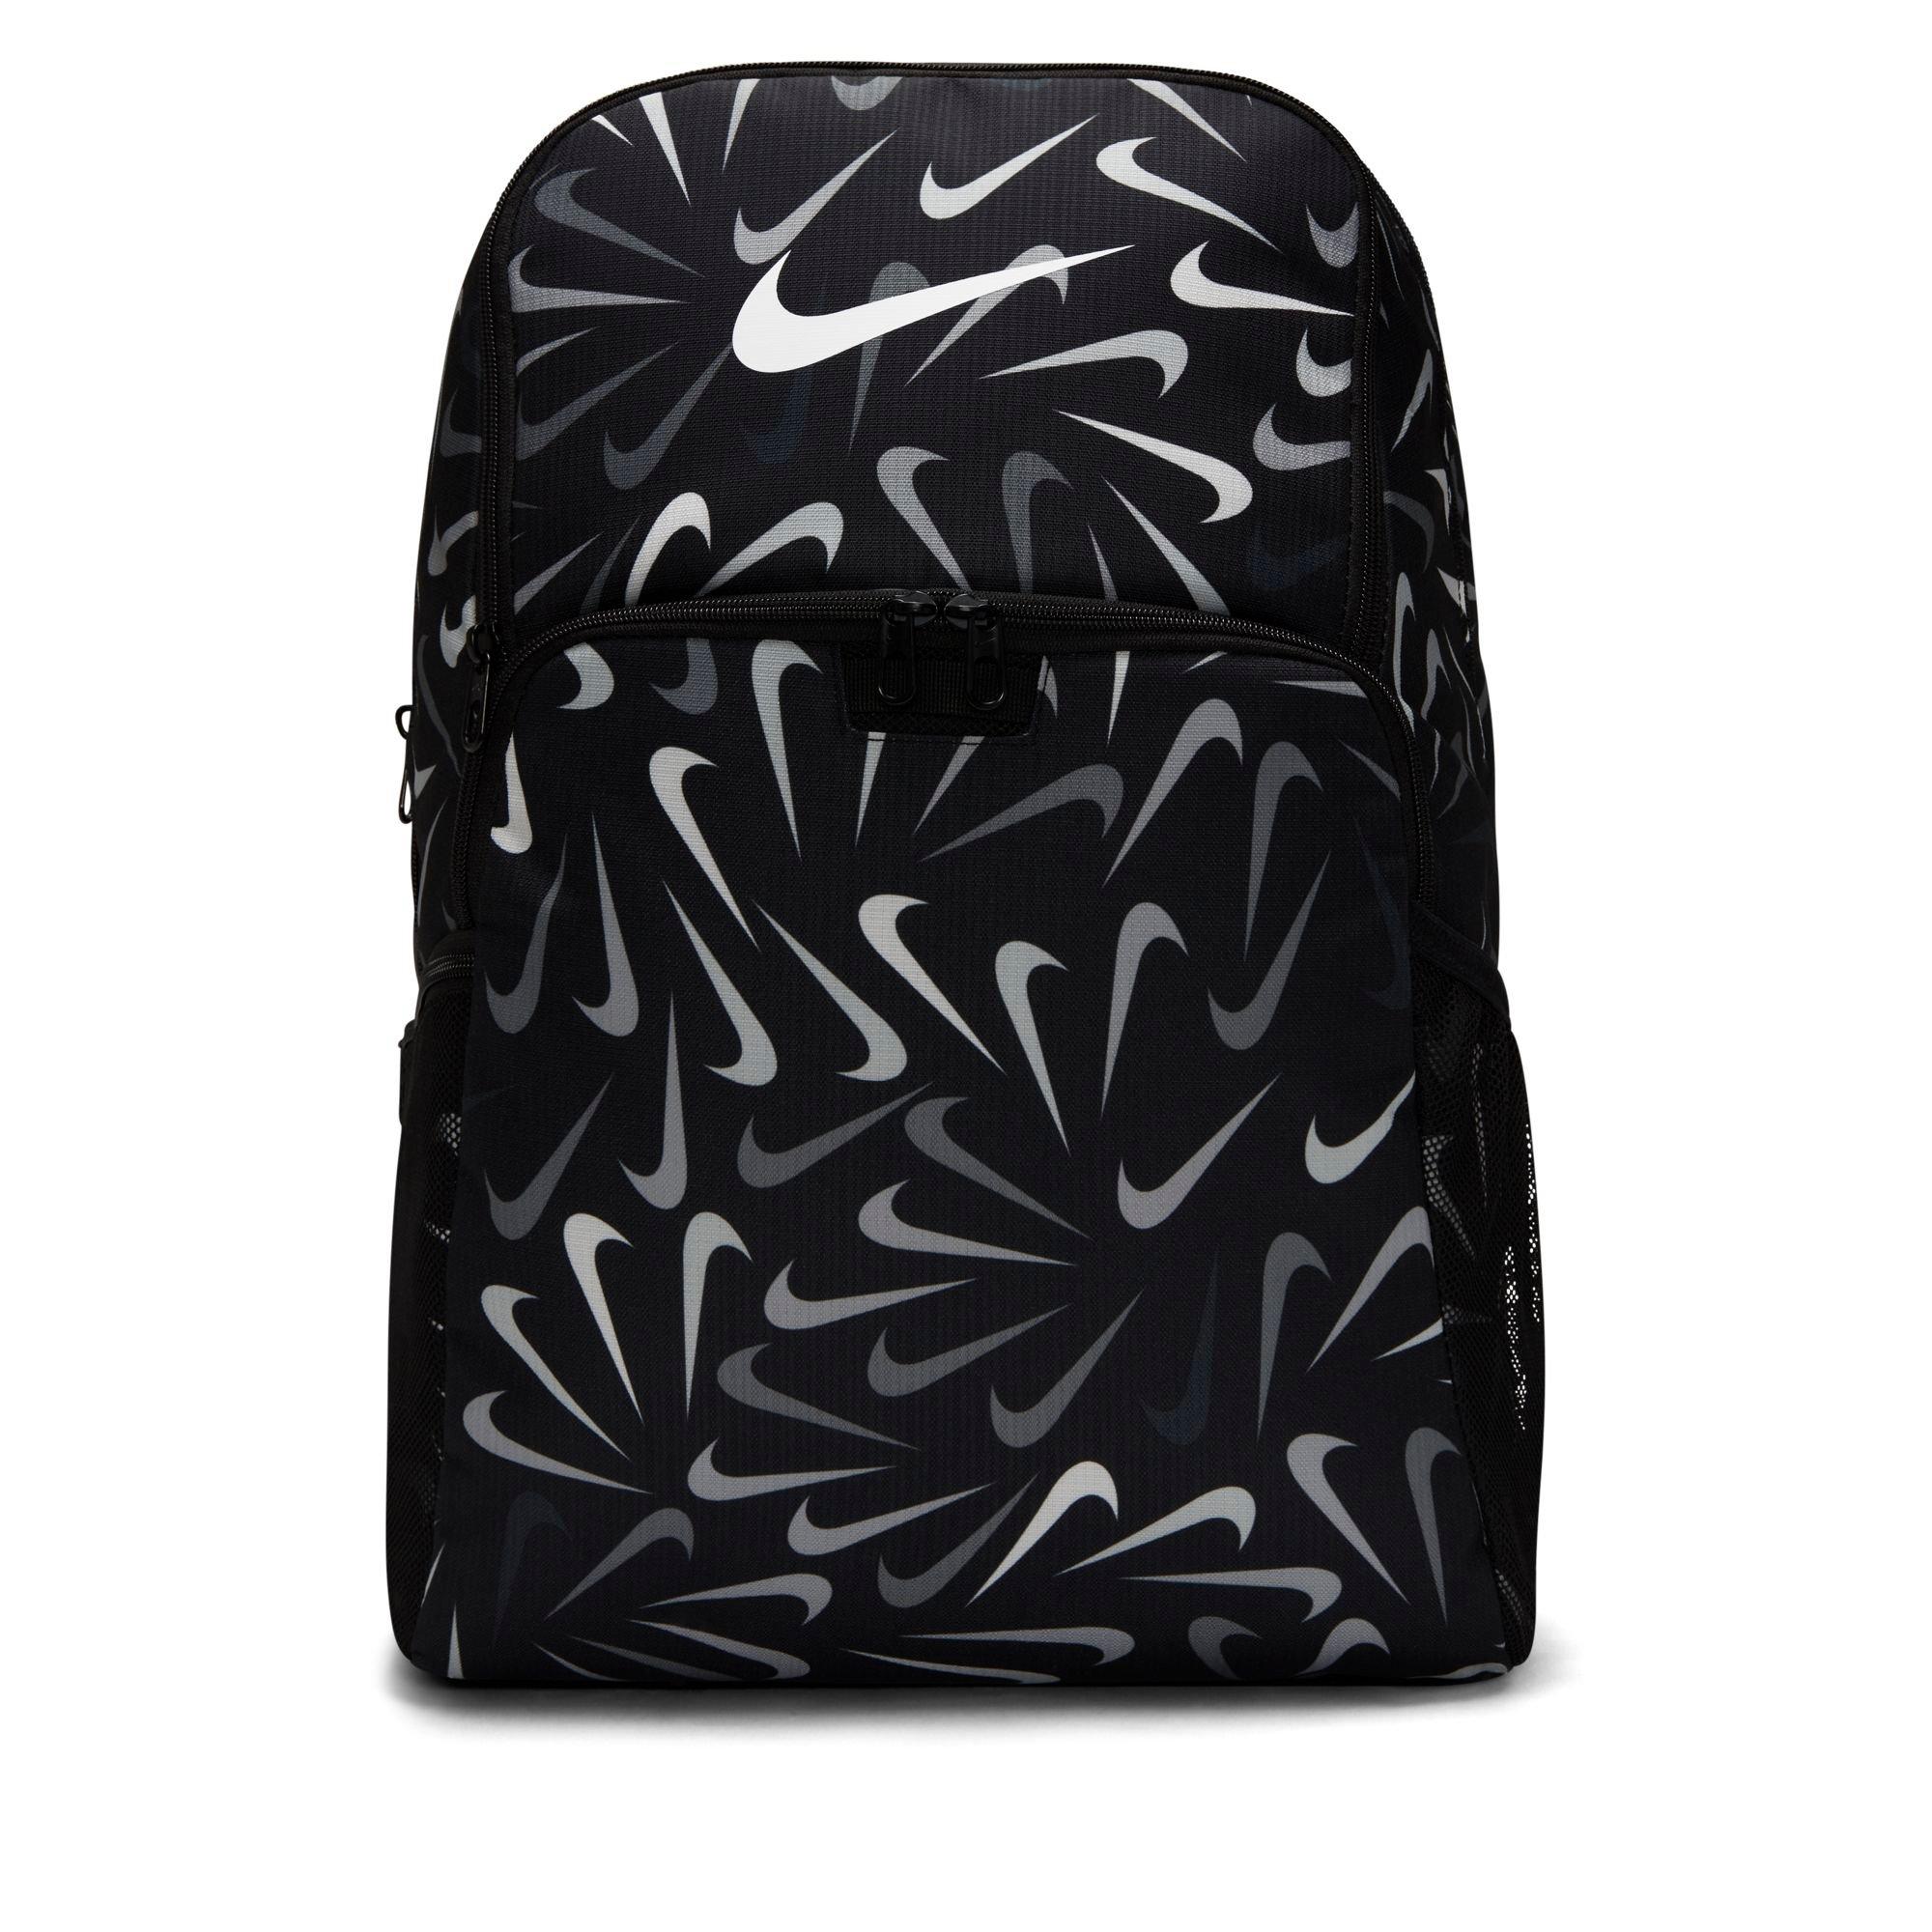 Nike Brasilia Extra Large Training Backpack